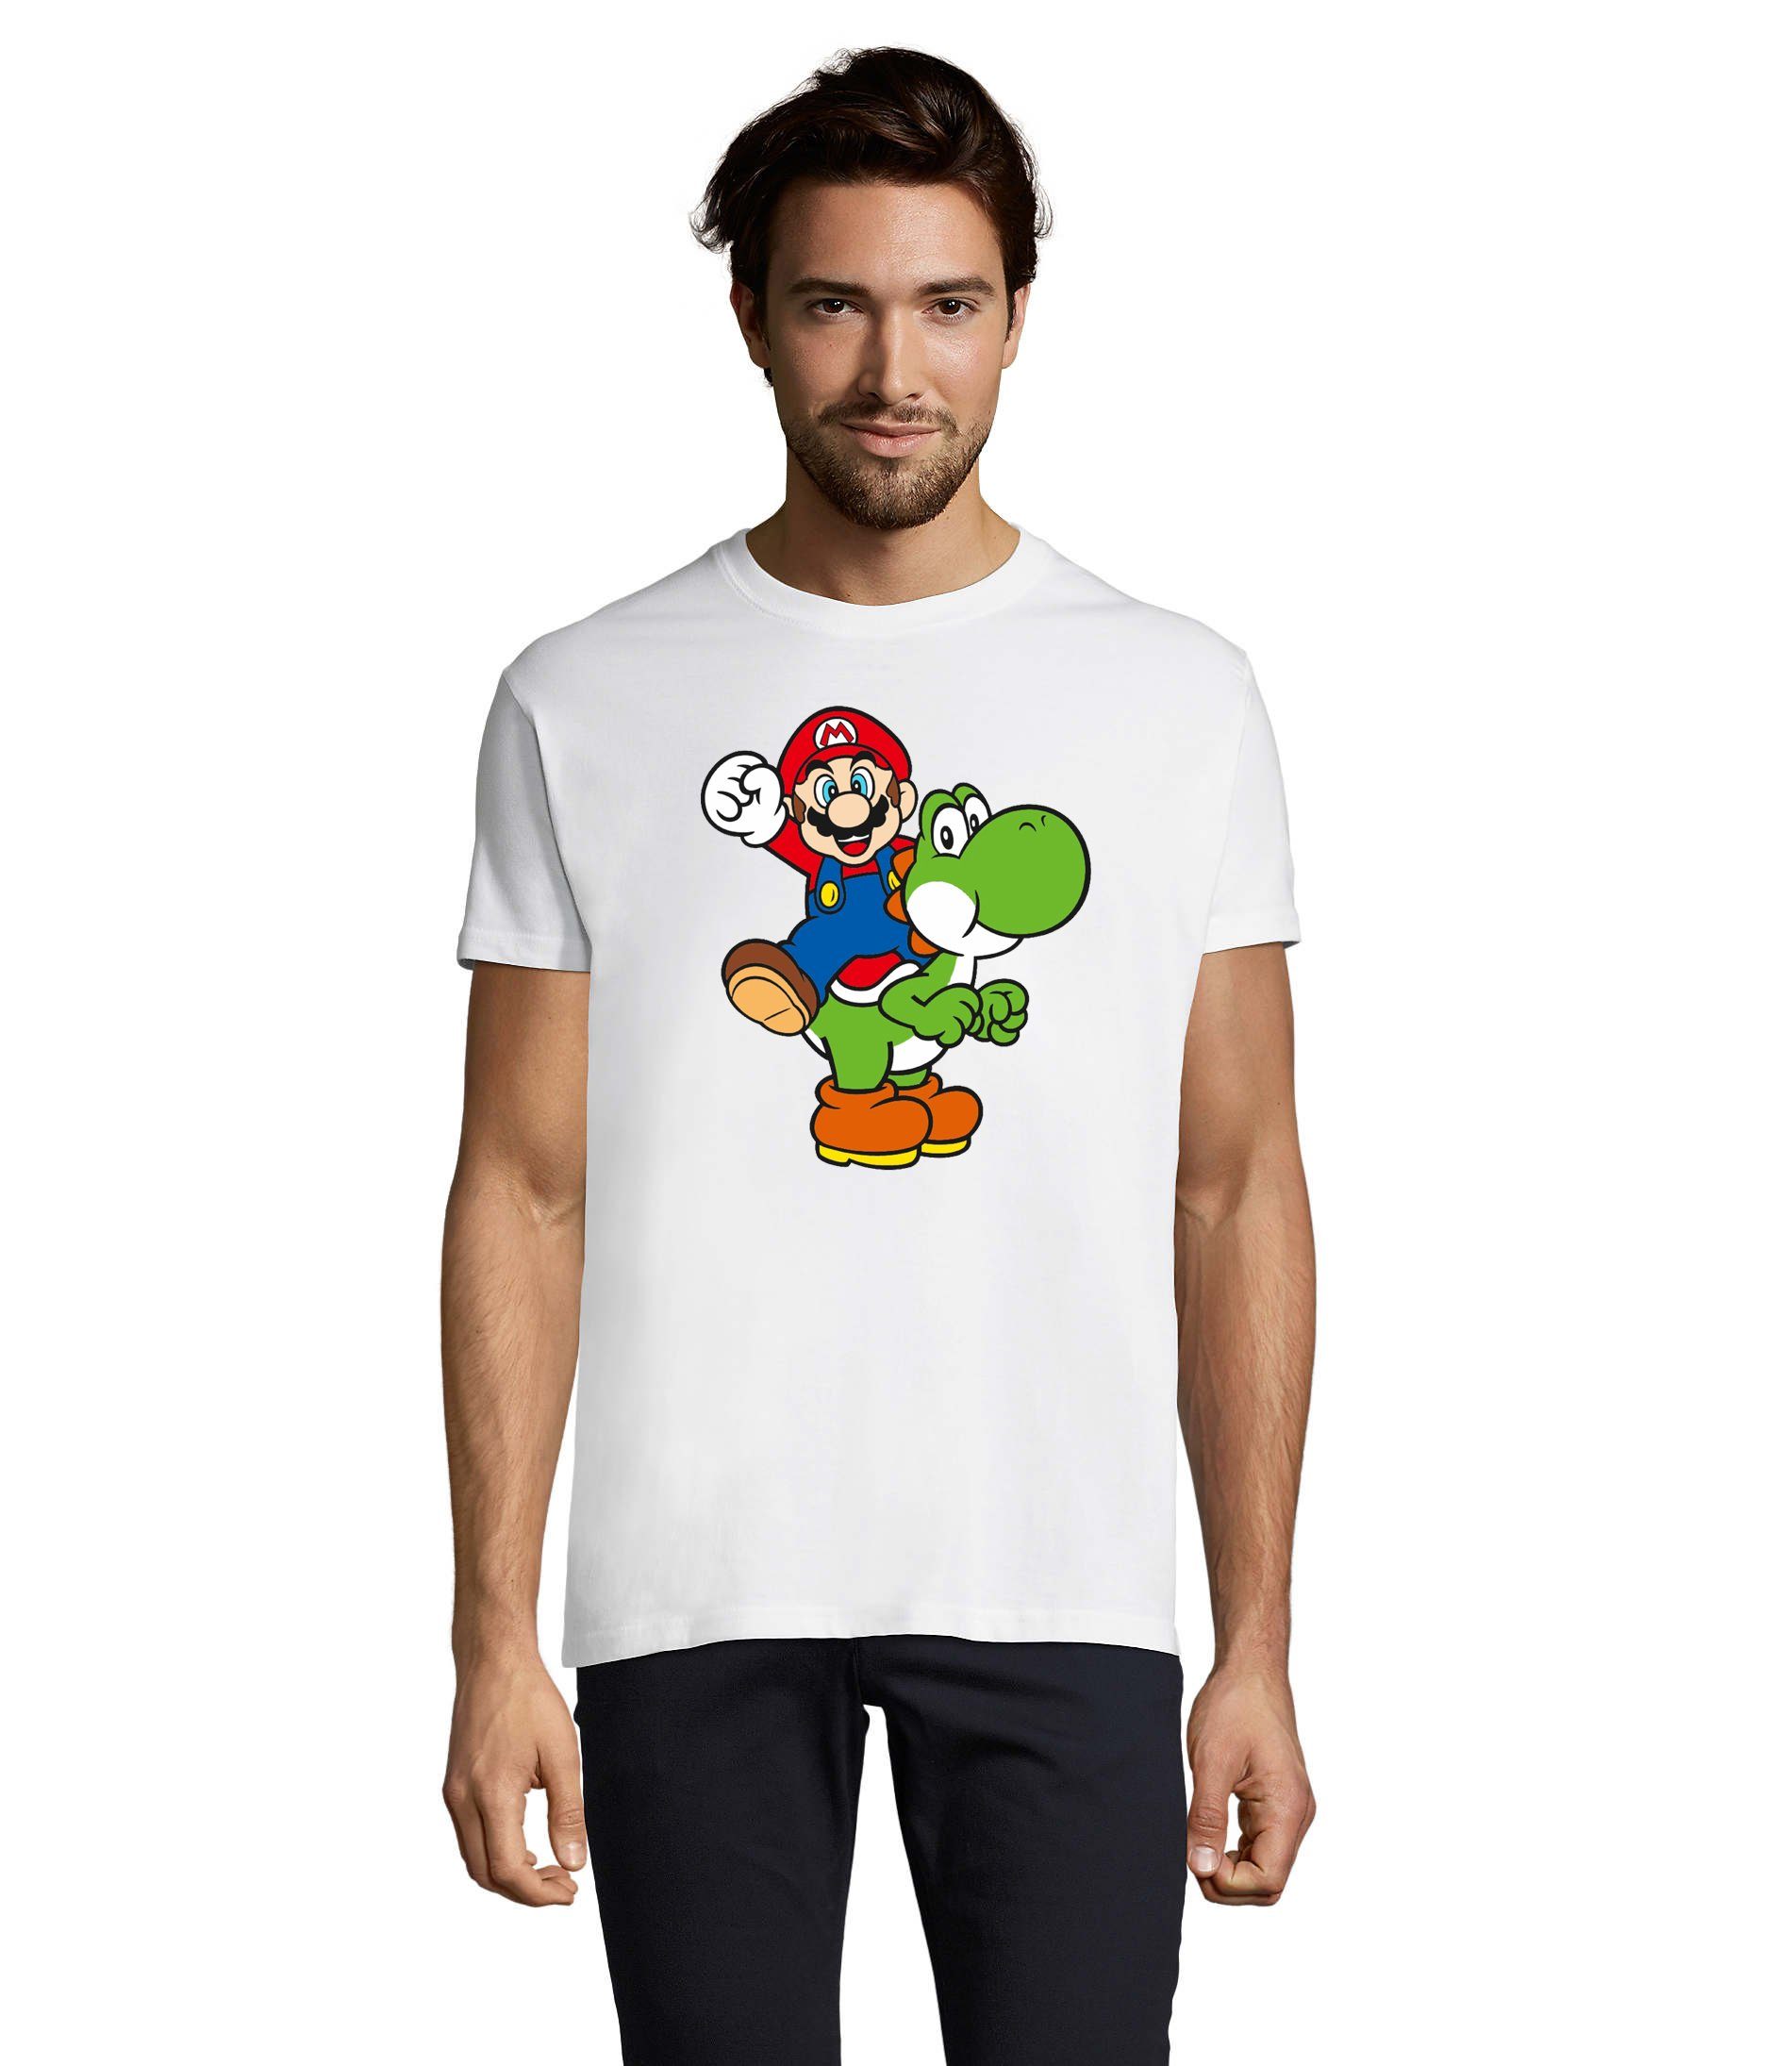 Brownie Konsole Weiss & Mario Yoshi Luigi T-Shirt Herren Nintendo & Super Blondie